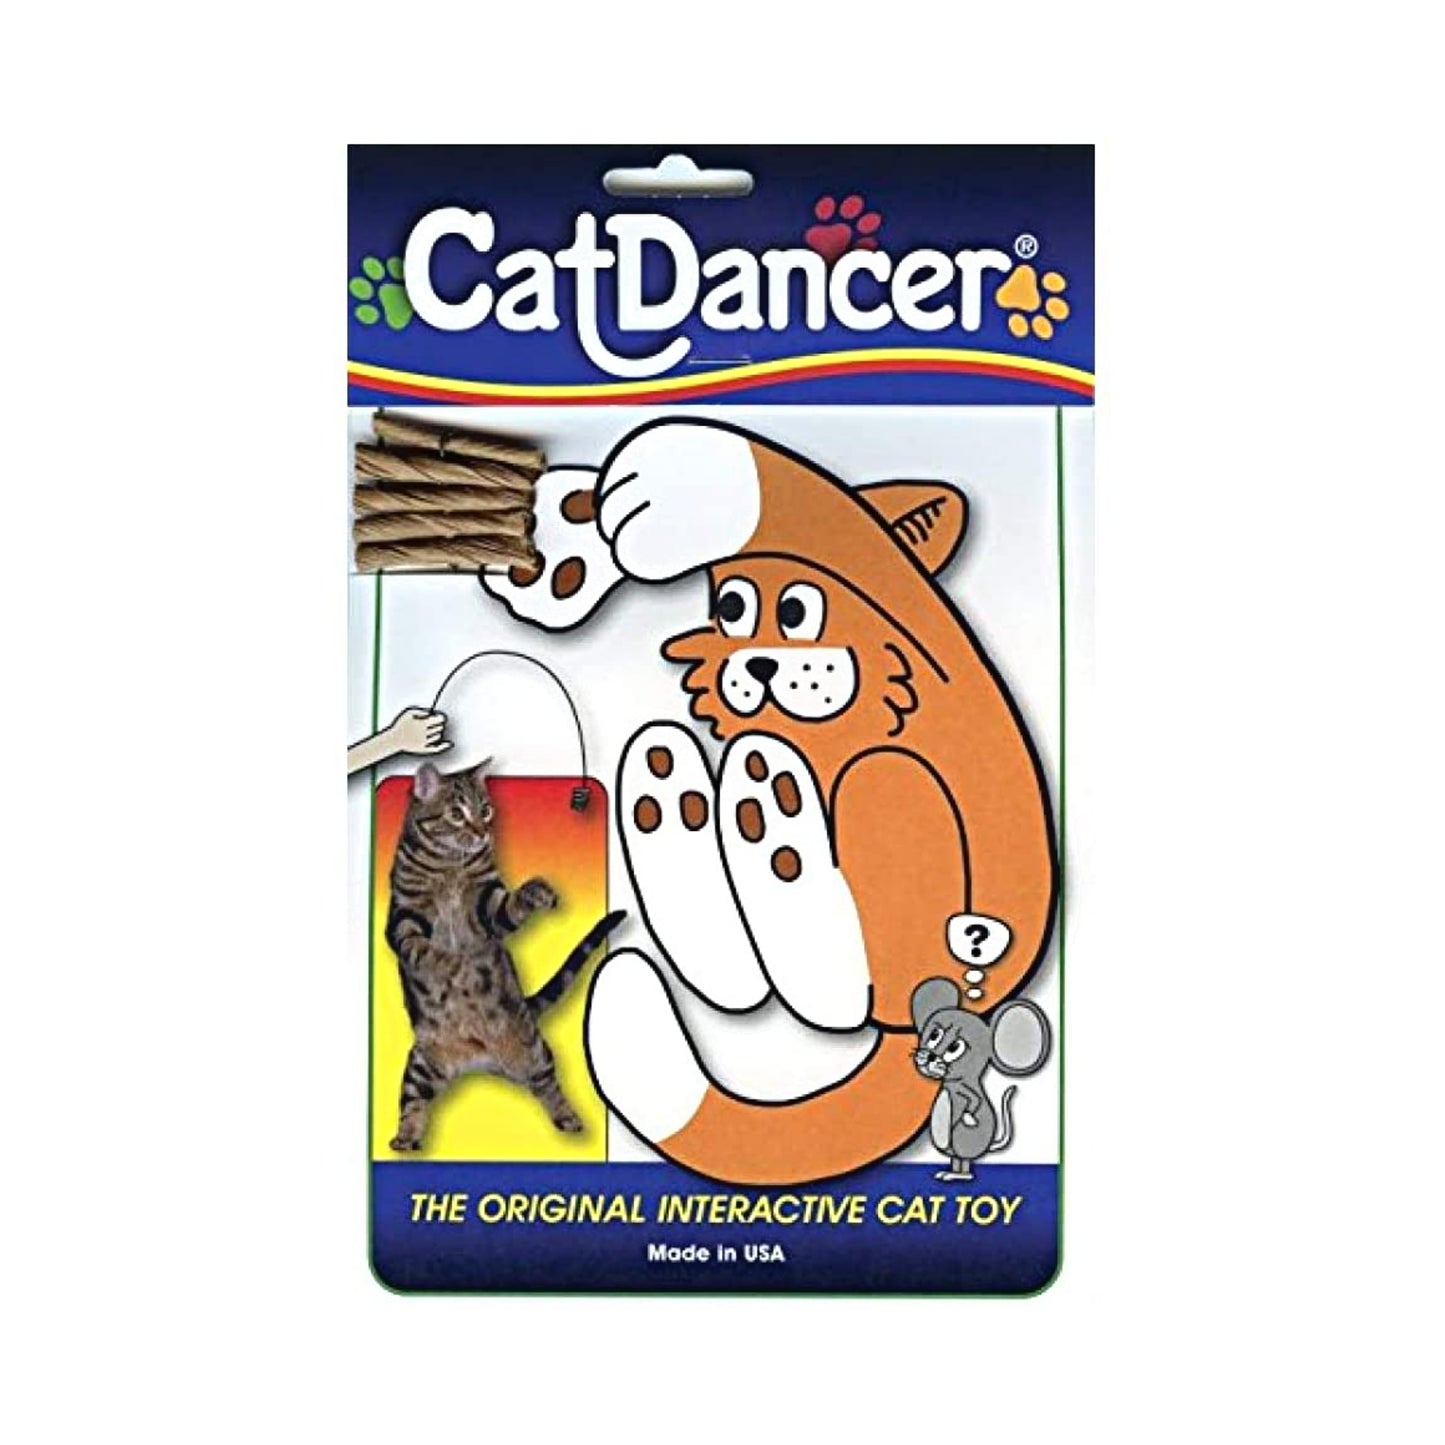 Cat Dancer The Original Interactive Cat Kitten Action Toy - 35"